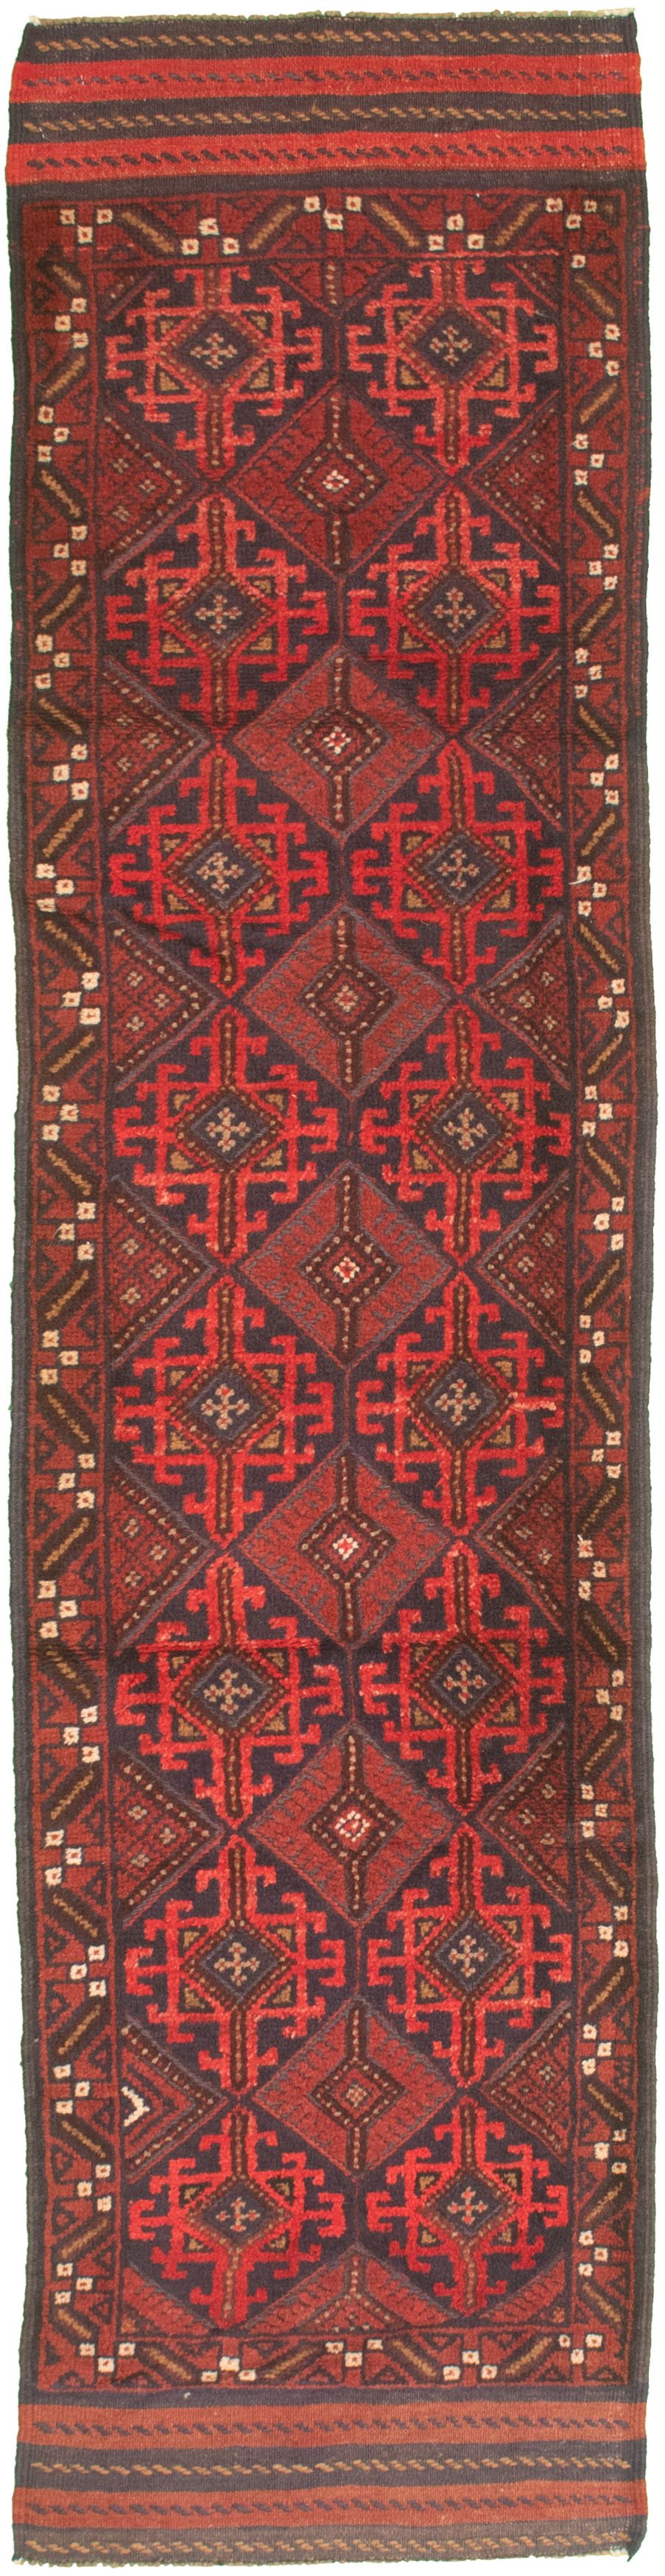 Hand-knotted Tajik Caucasian Black Wool Rug 2'1" x 9'1" Size: 2'1" x 9'1"  